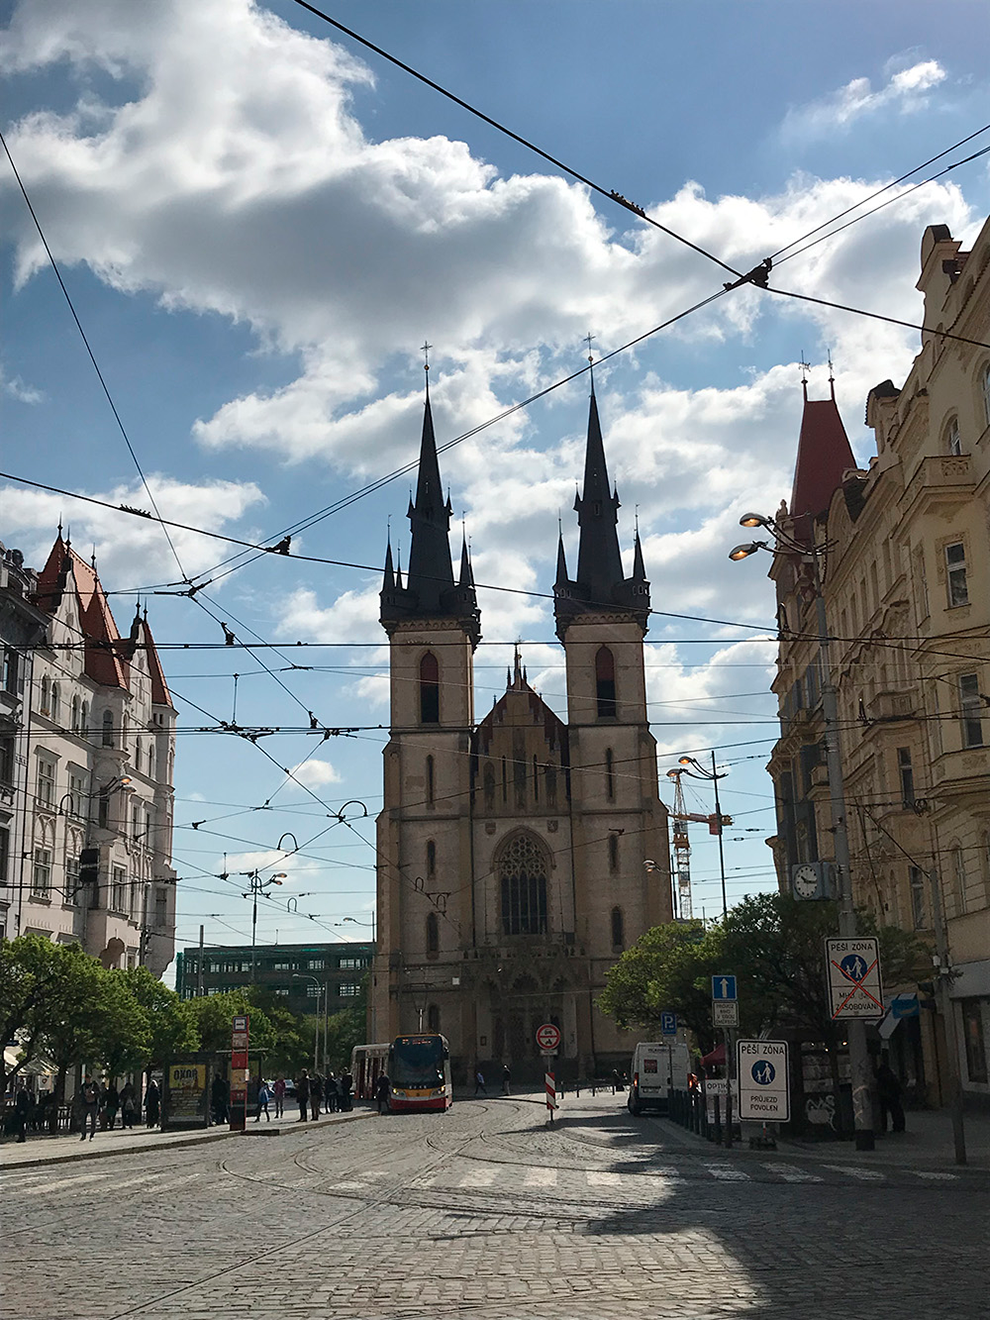 Костел Святого Антония Падуанского находится в пешей доступности от квартиры, которую мы снимали в Праге. Каждое утро мы шли гулять мимо него